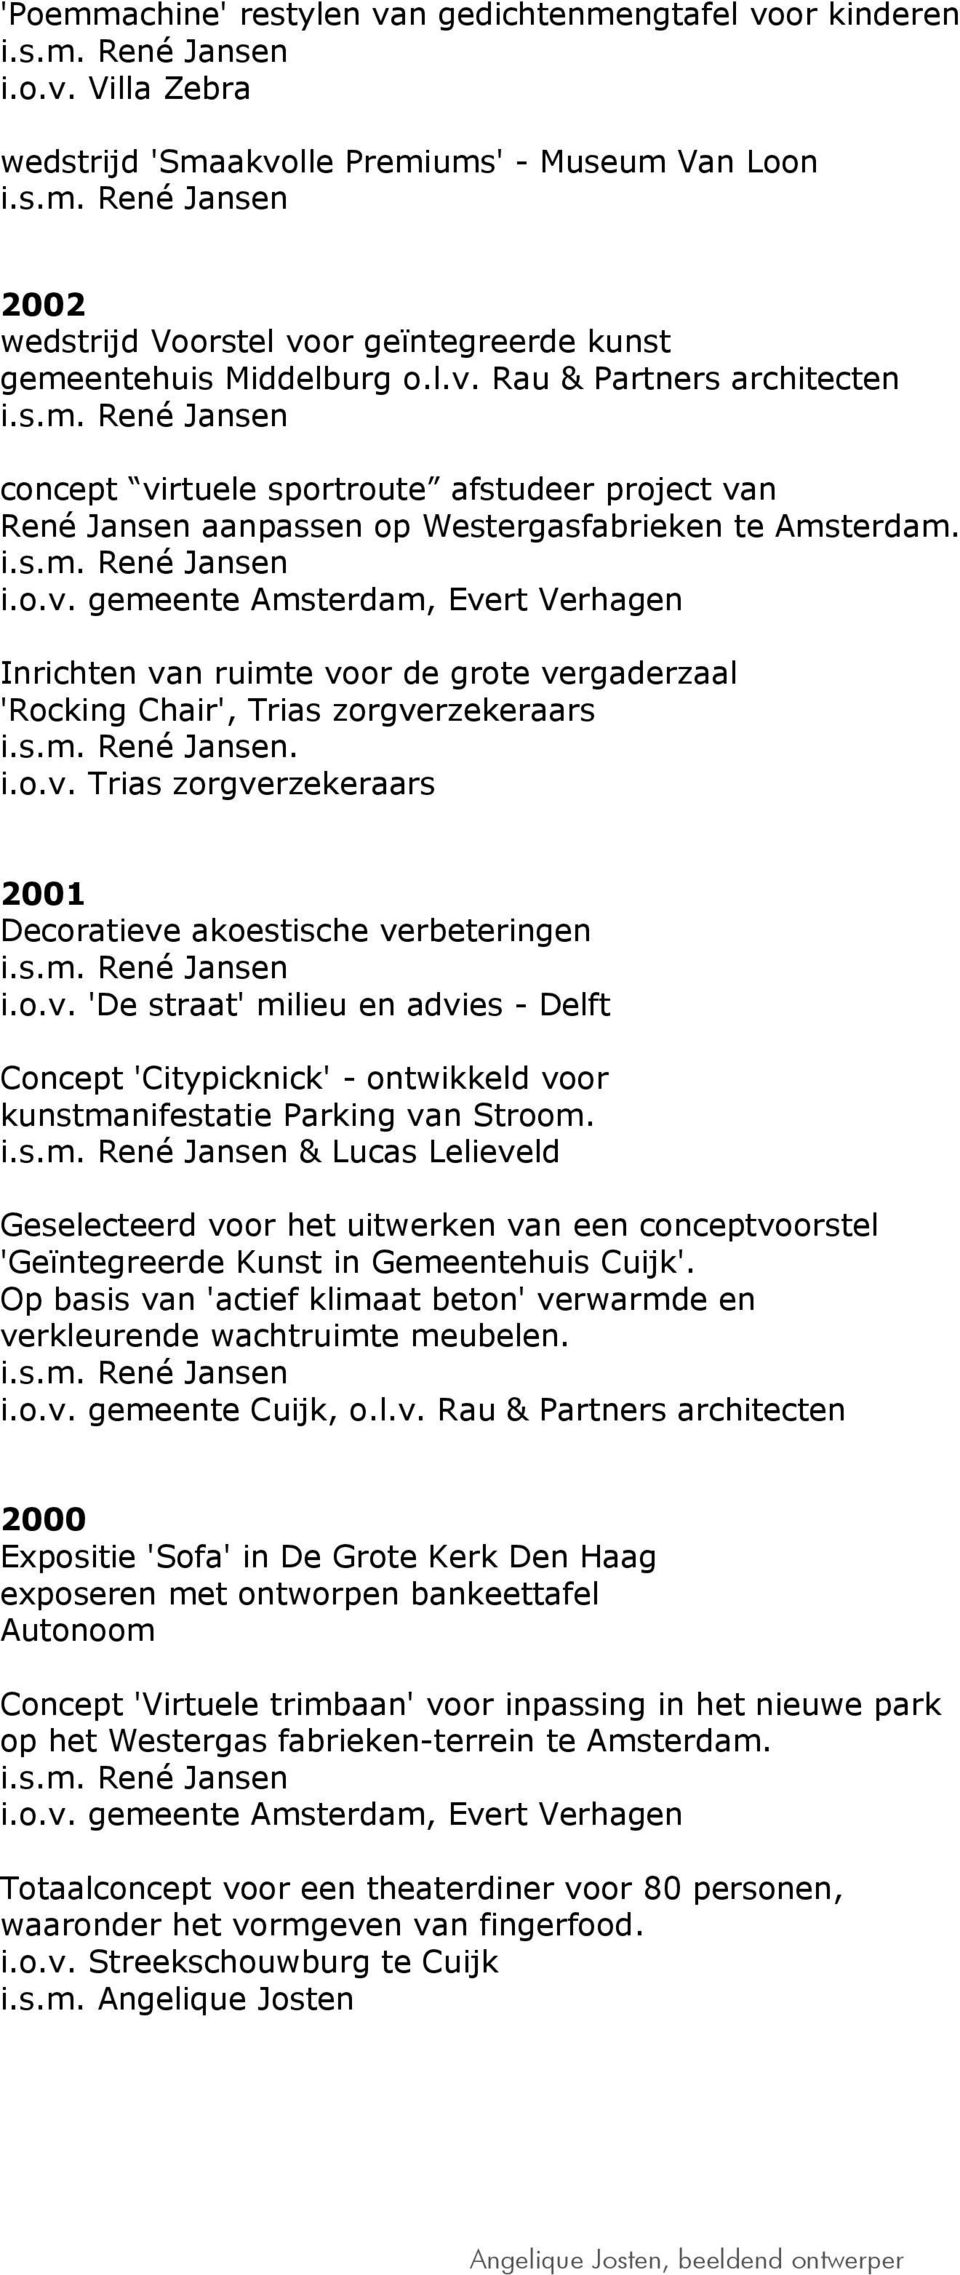 i.o.v. Trias zorgverzekeraars 2001 Decoratieve akoestische verbeteringen i.o.v. 'De straat' milieu en advies - Delft Concept 'Citypicknick' - ontwikkeld voor kunstmanifestatie Parking van Stroom.